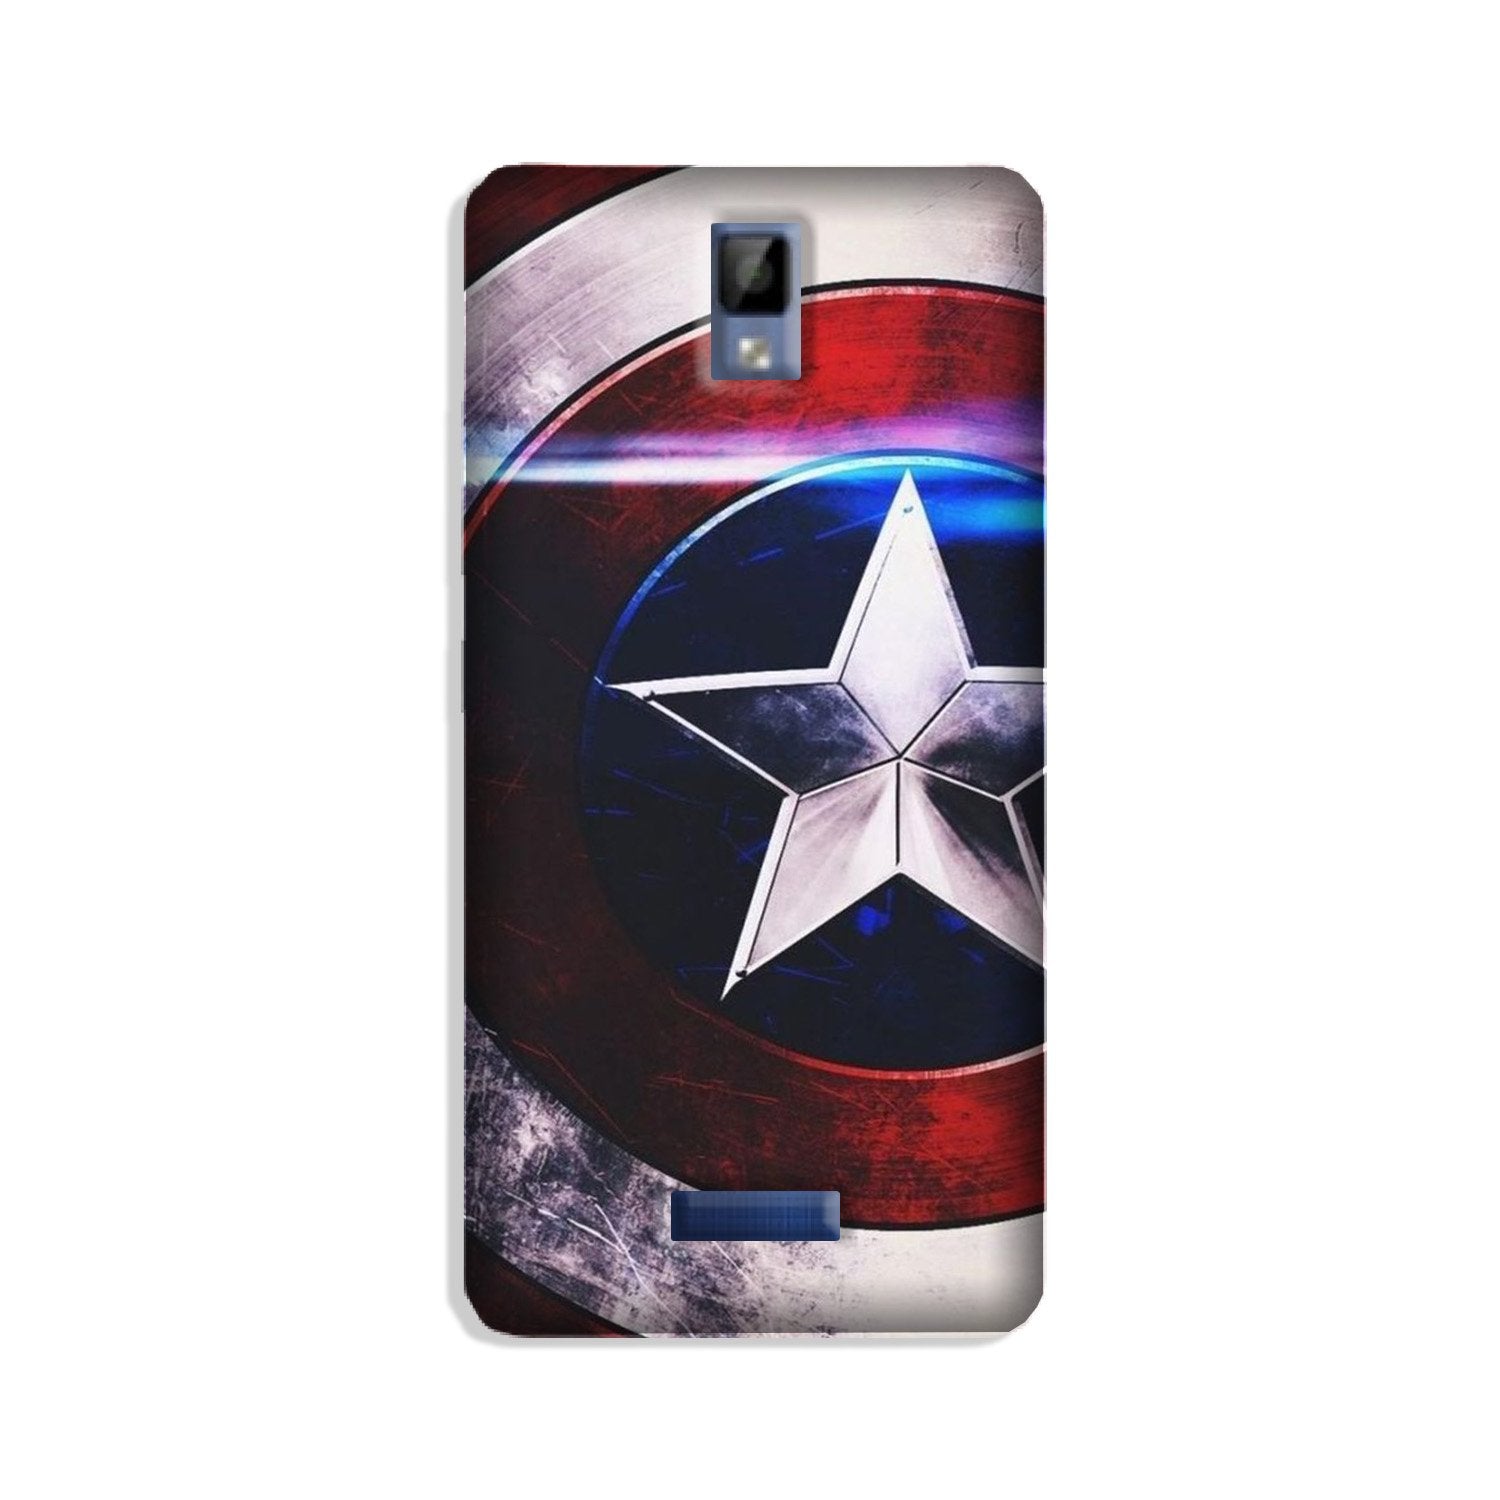 Captain America Shield Case for Gionee P7 (Design No. 250)